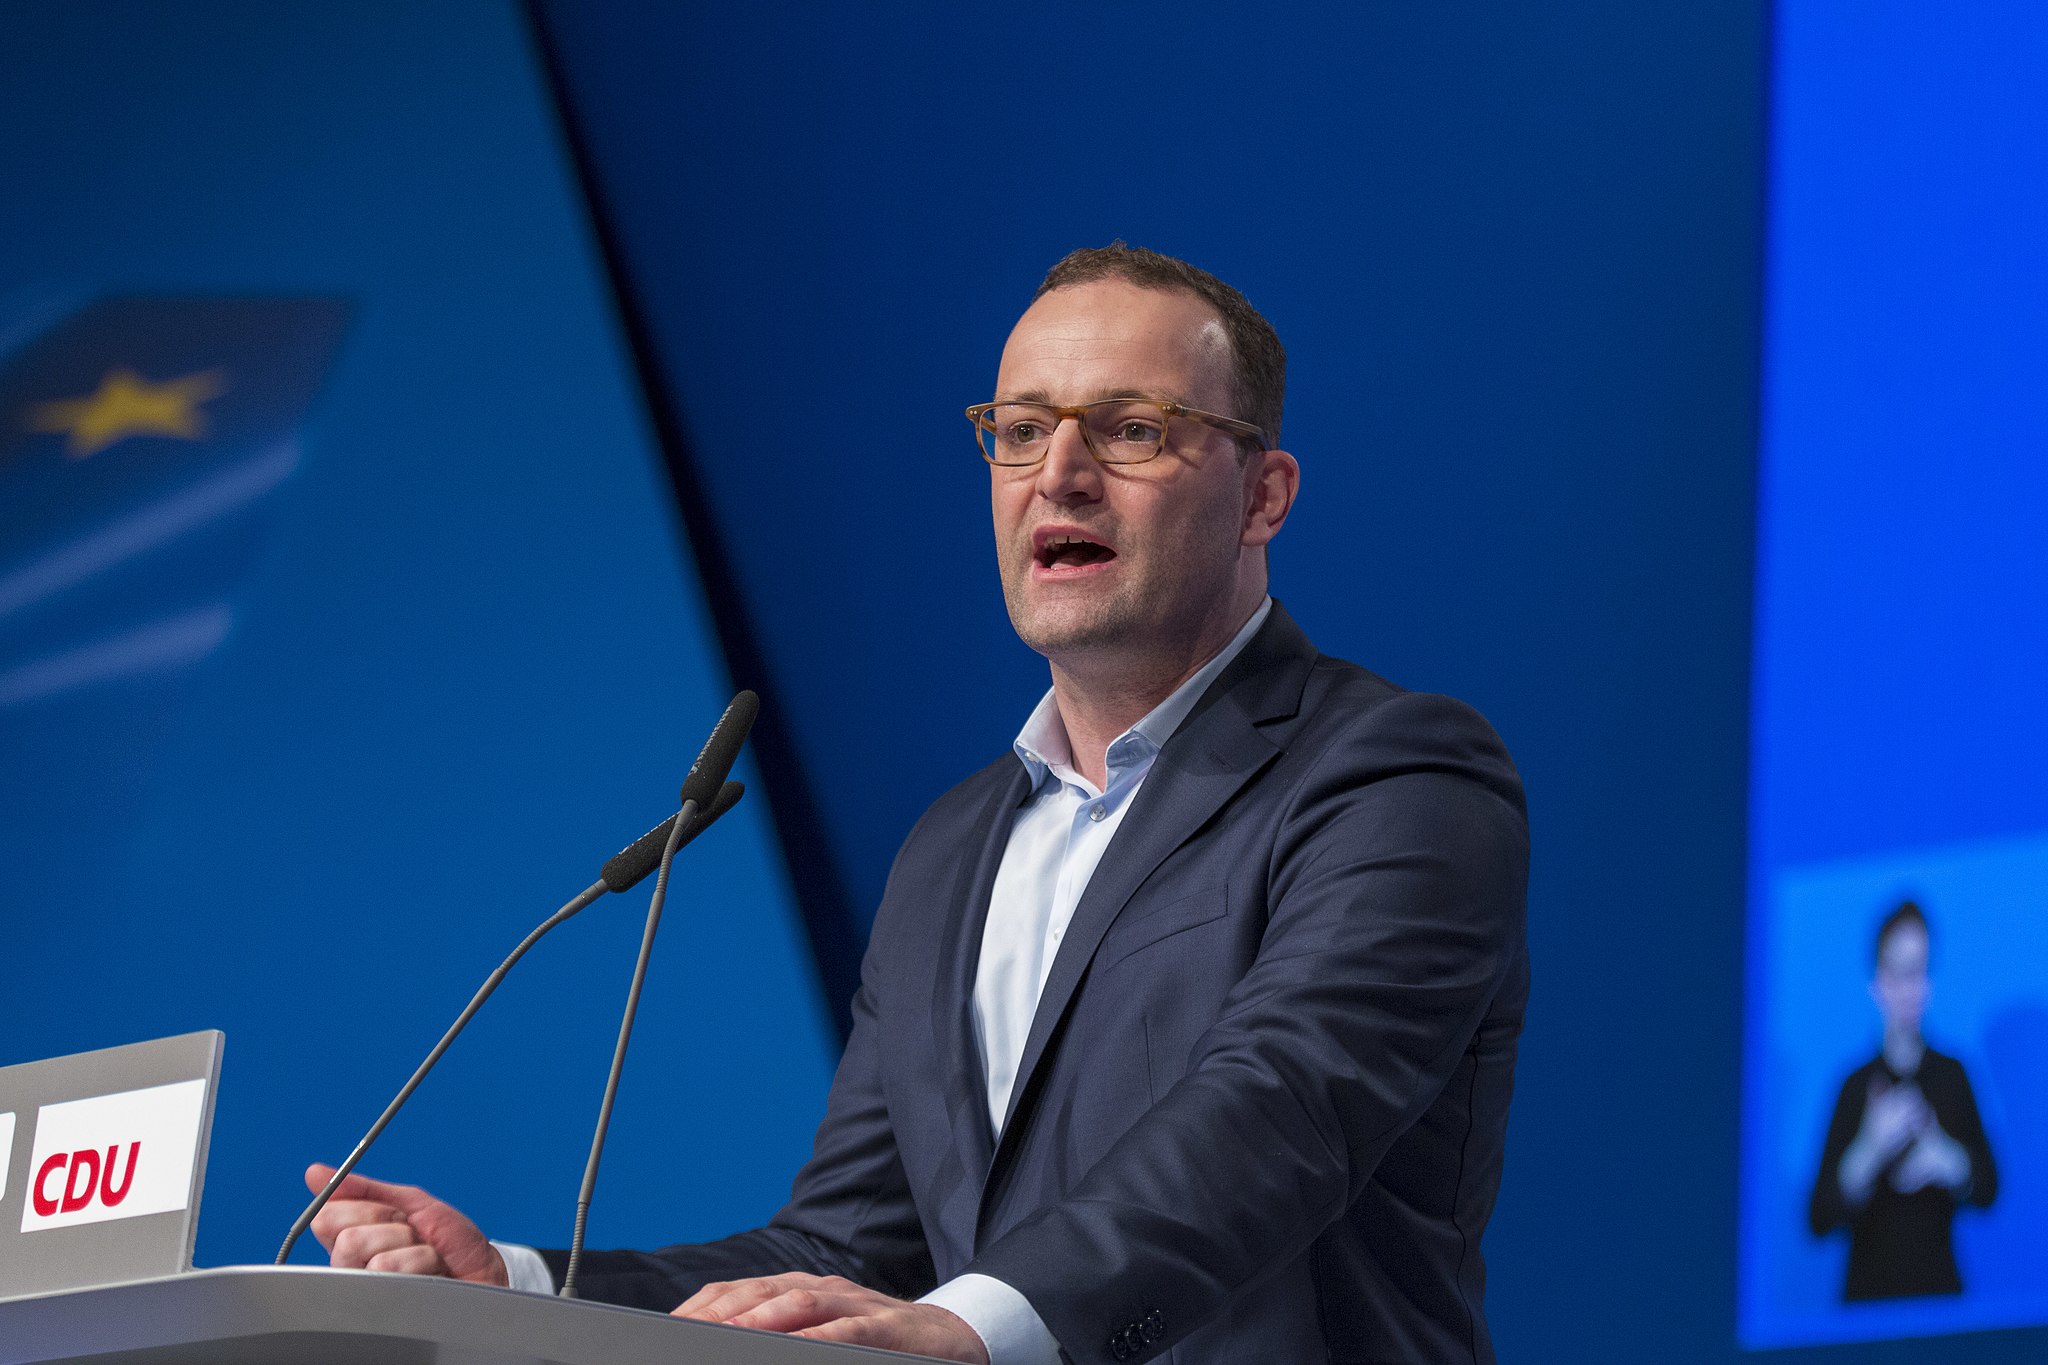 Bild: Olaf Kosinsky, 2016-12-06 Jens Spahn CDU Parteitag by OlafKosinsky BT0A5731, CC BY-SA 3.0 DE, via Wikimedia Commons (Keine Änderungen vorgenommen)